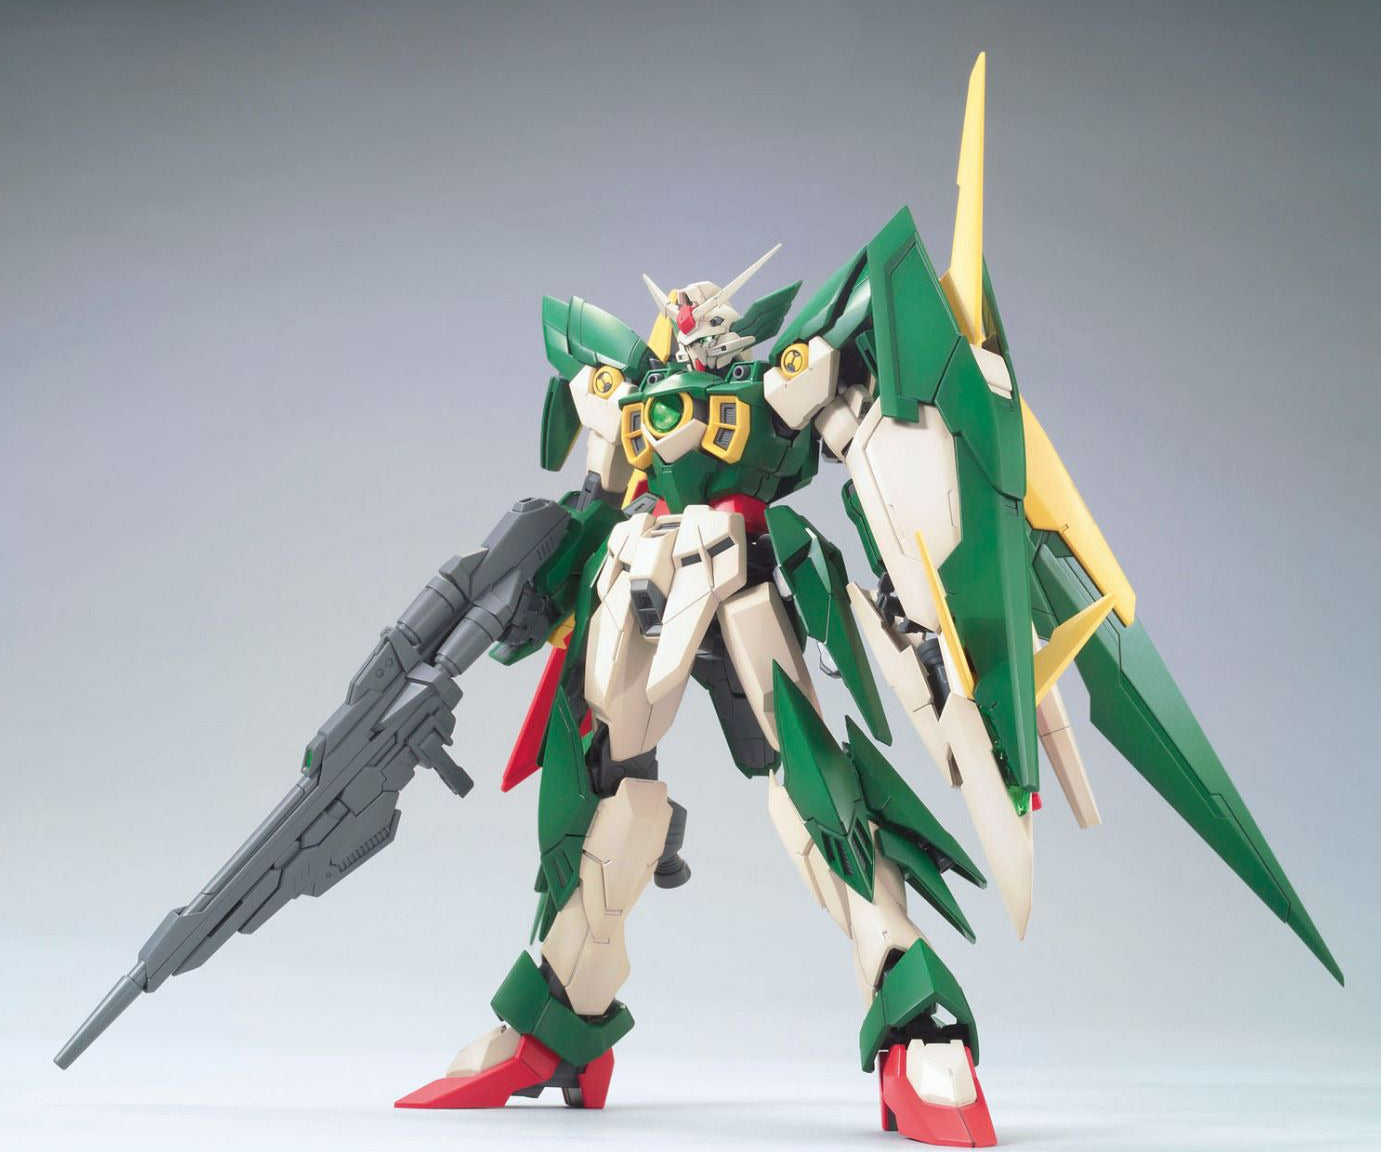 Gundam 1/100 MG Build Fighters XXXG-01Wfr Gundam Fenice Rinascita Model Kit